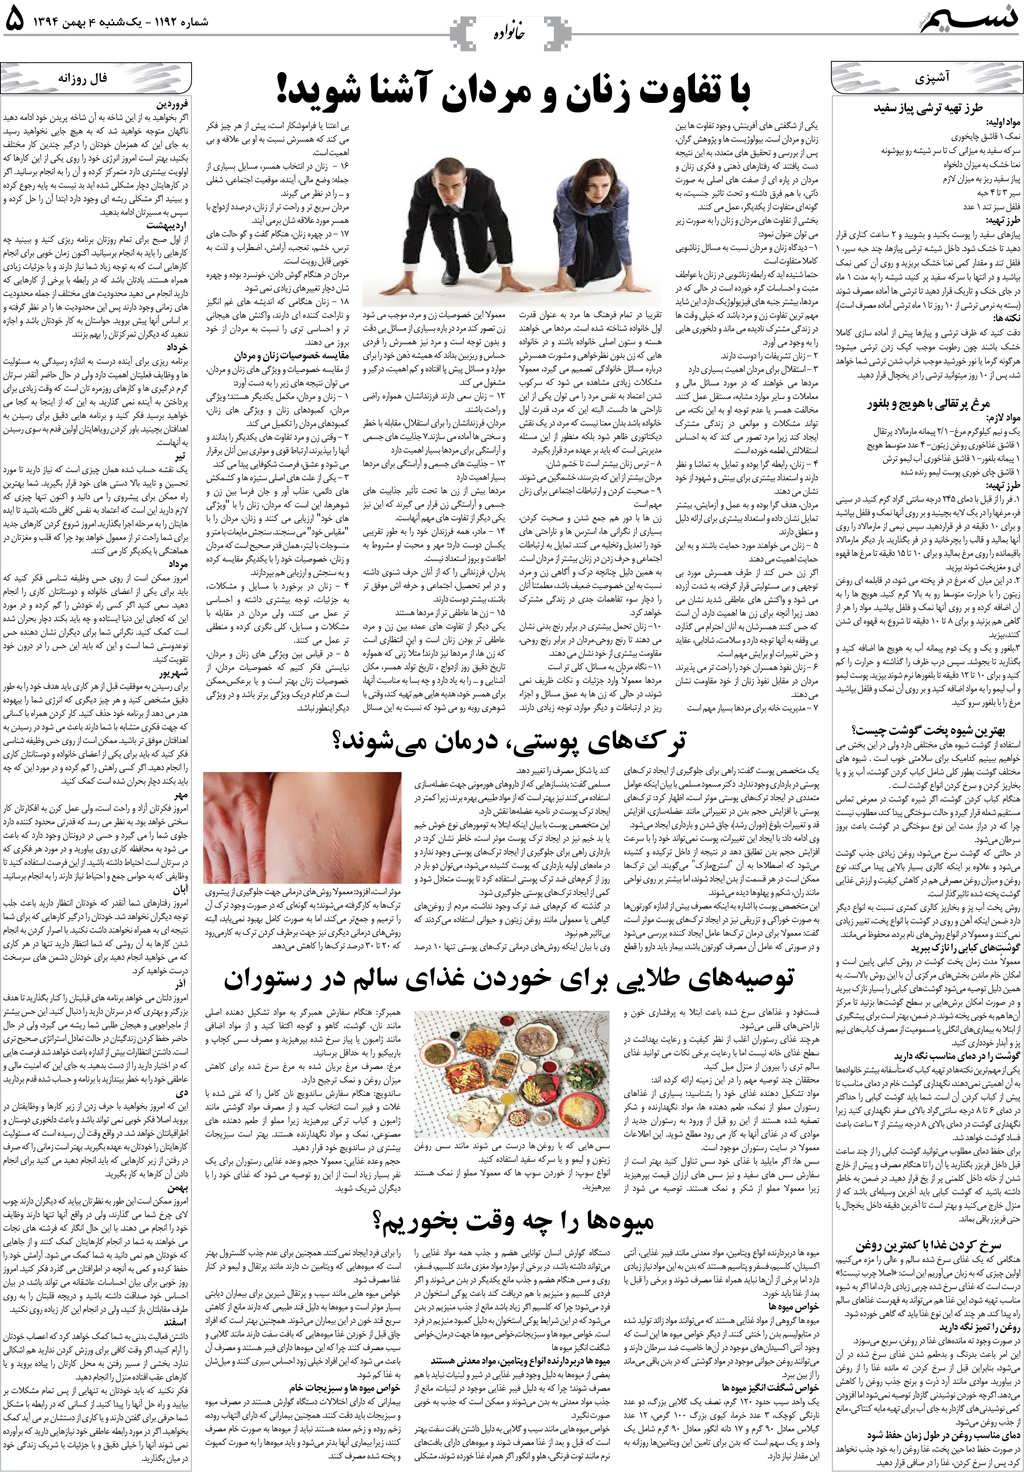 صفحه خانواده روزنامه نسیم شماره 1192